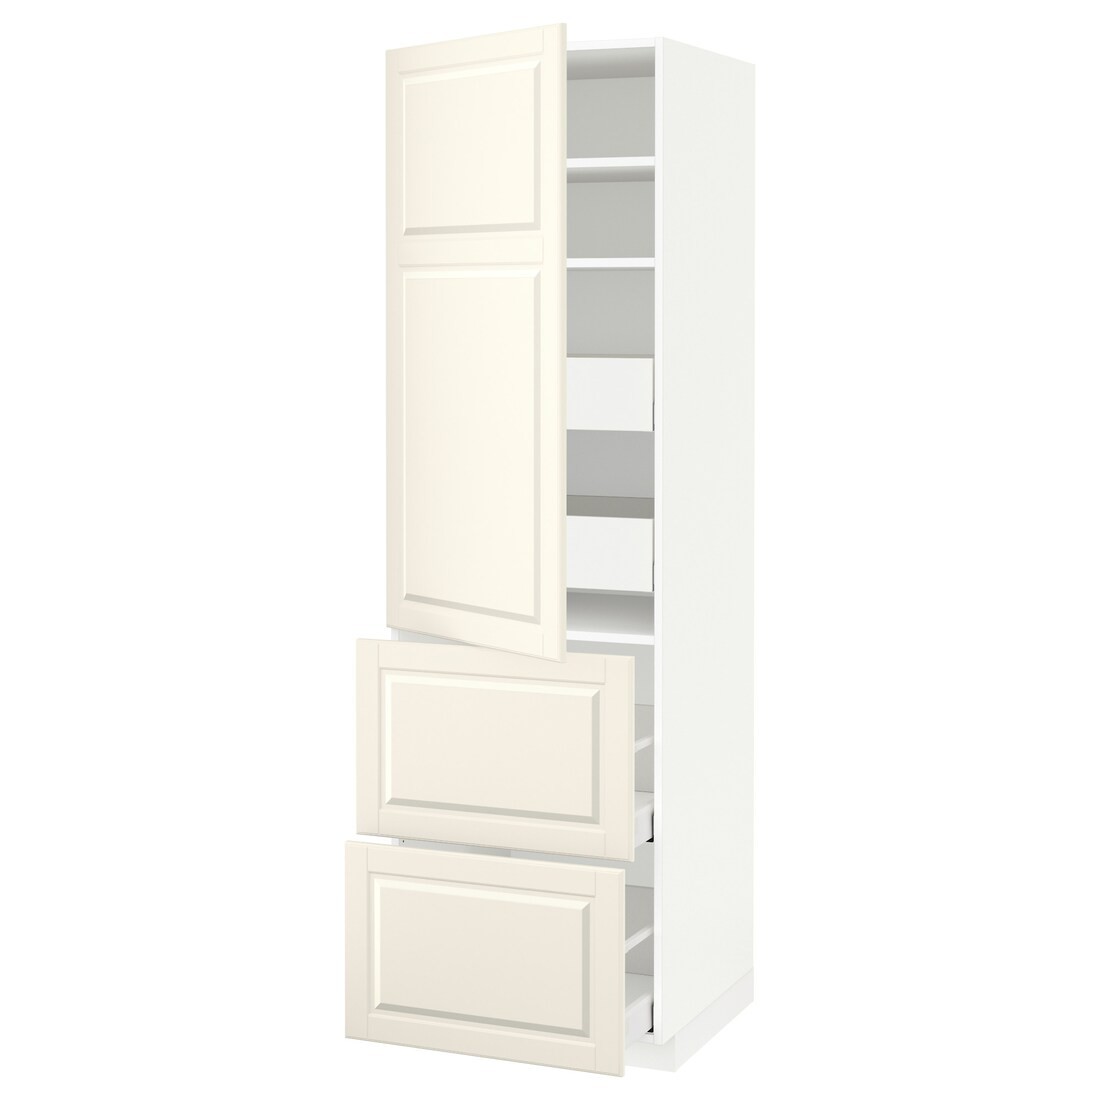 IKEA METOD МЕТОД / MAXIMERA МАКСИМЕРА Высокий шкаф с полками / ящиками, белый / Bodbyn кремовый, 60x60x200 см 99369635 | 993.696.35